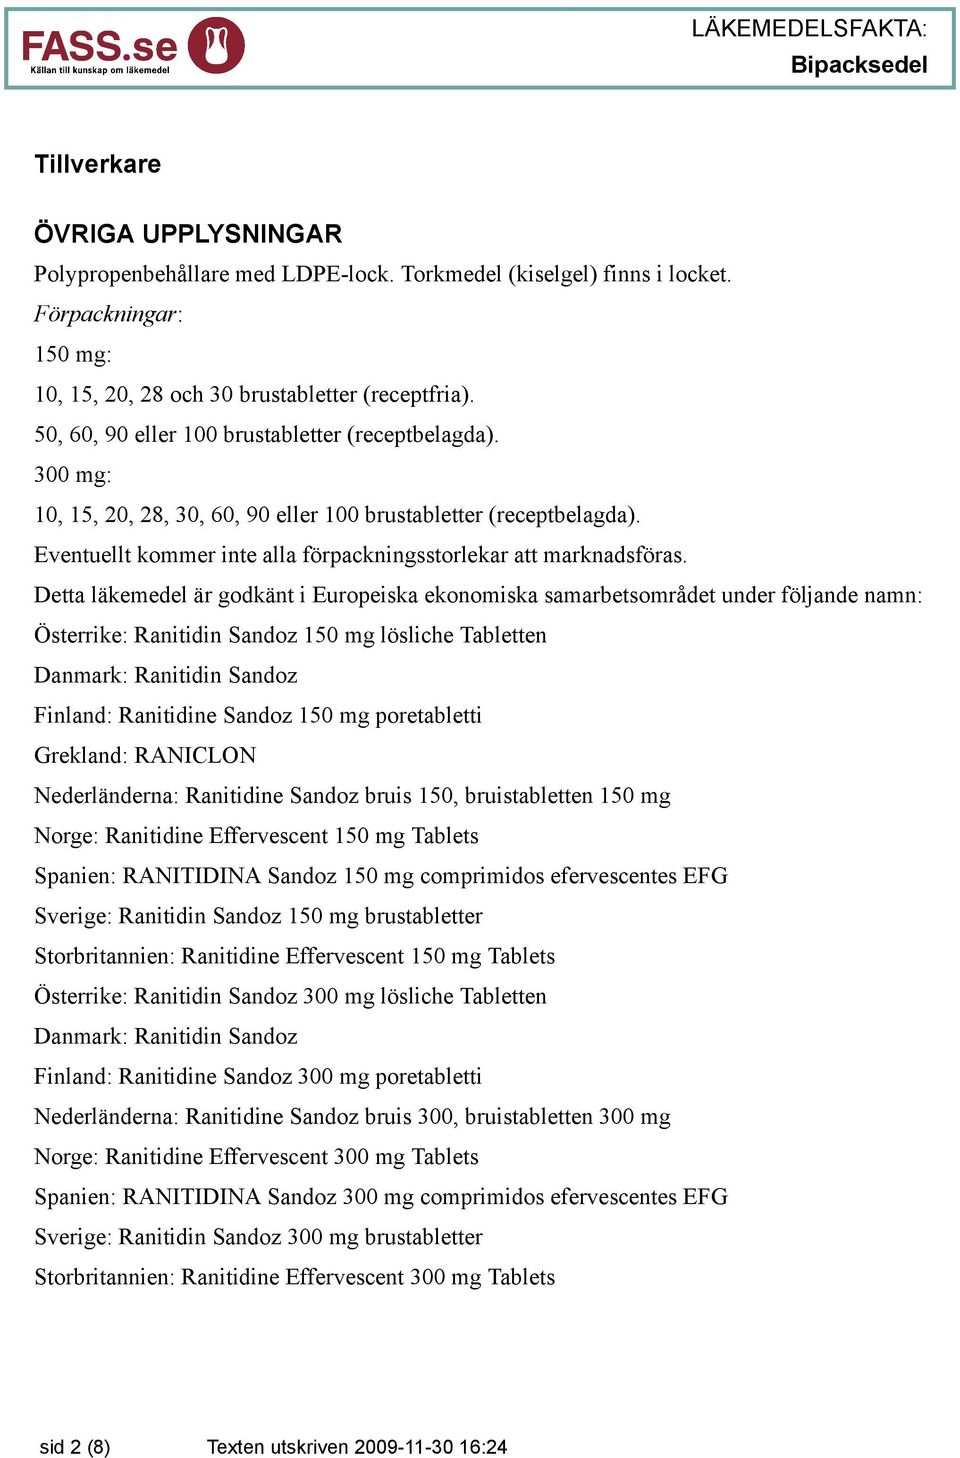 Detta läkemedel är godkänt i Europeiska ekonomiska samarbetsområdet under följande namn: Österrike: Ranitidin Sandoz 150 mg lösliche Tabletten Danmark: Ranitidin Sandoz Finland: Ranitidine Sandoz 150